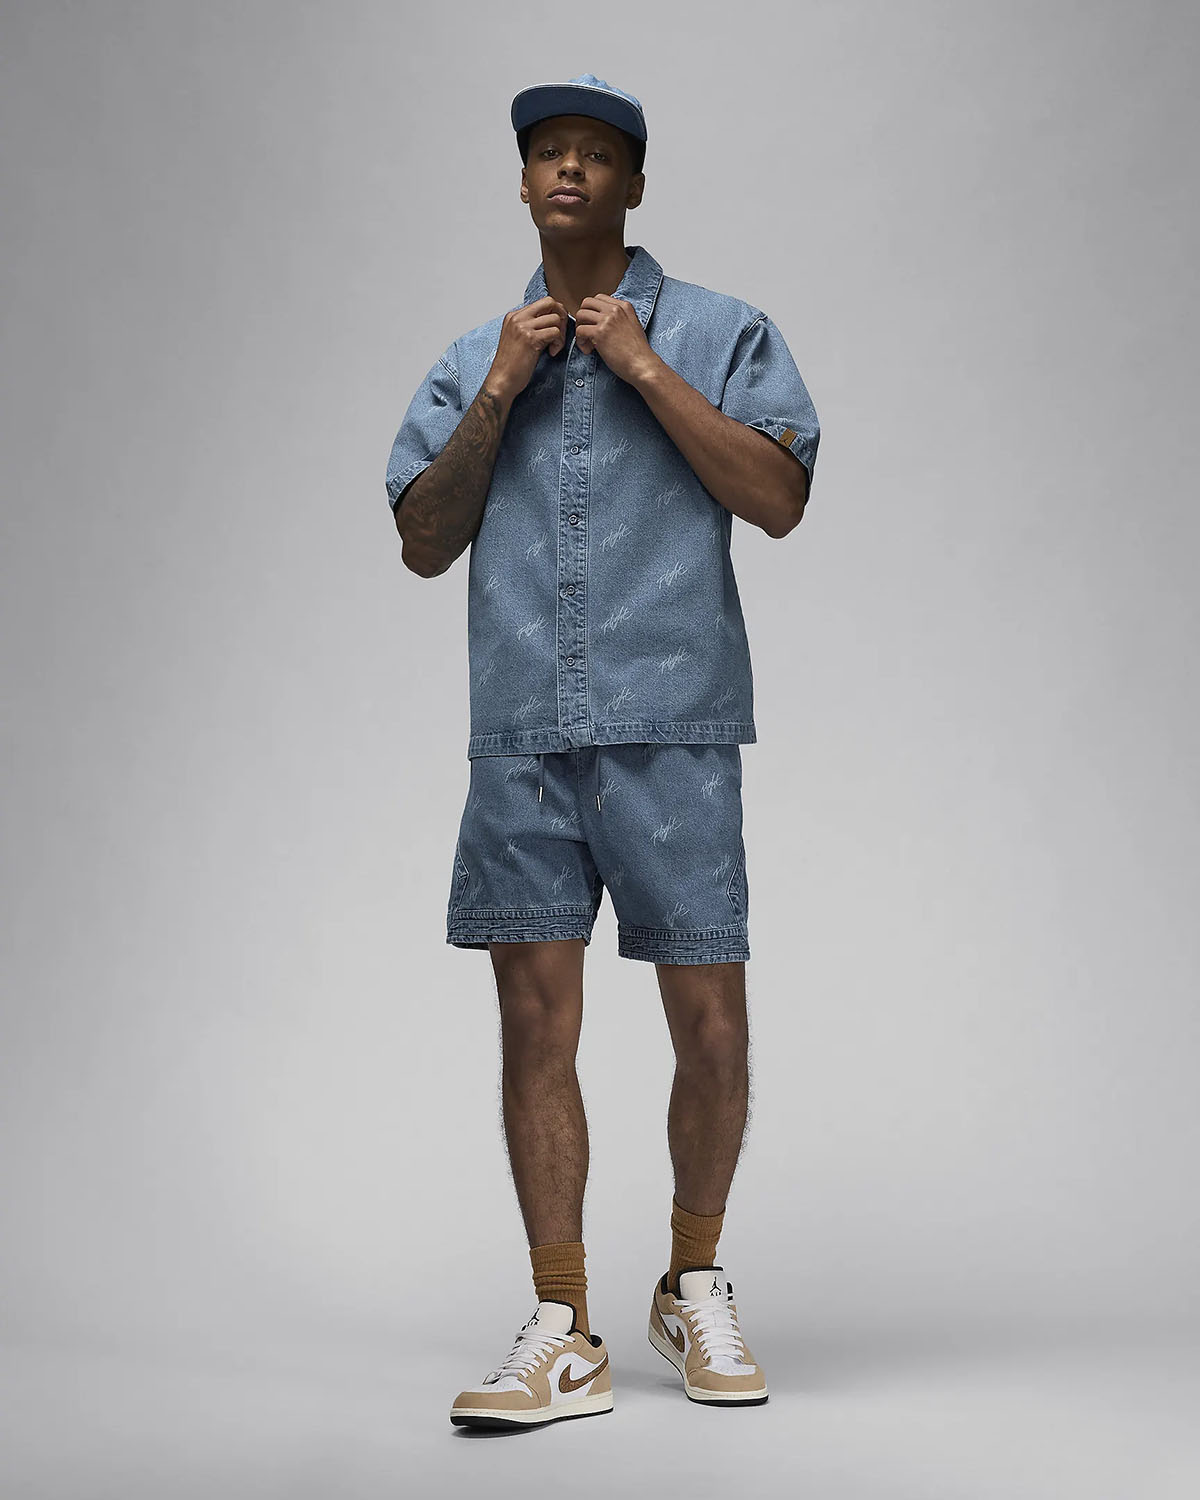 Air Jordan 1 Low Industrial Blue Denim Shirt Outfit